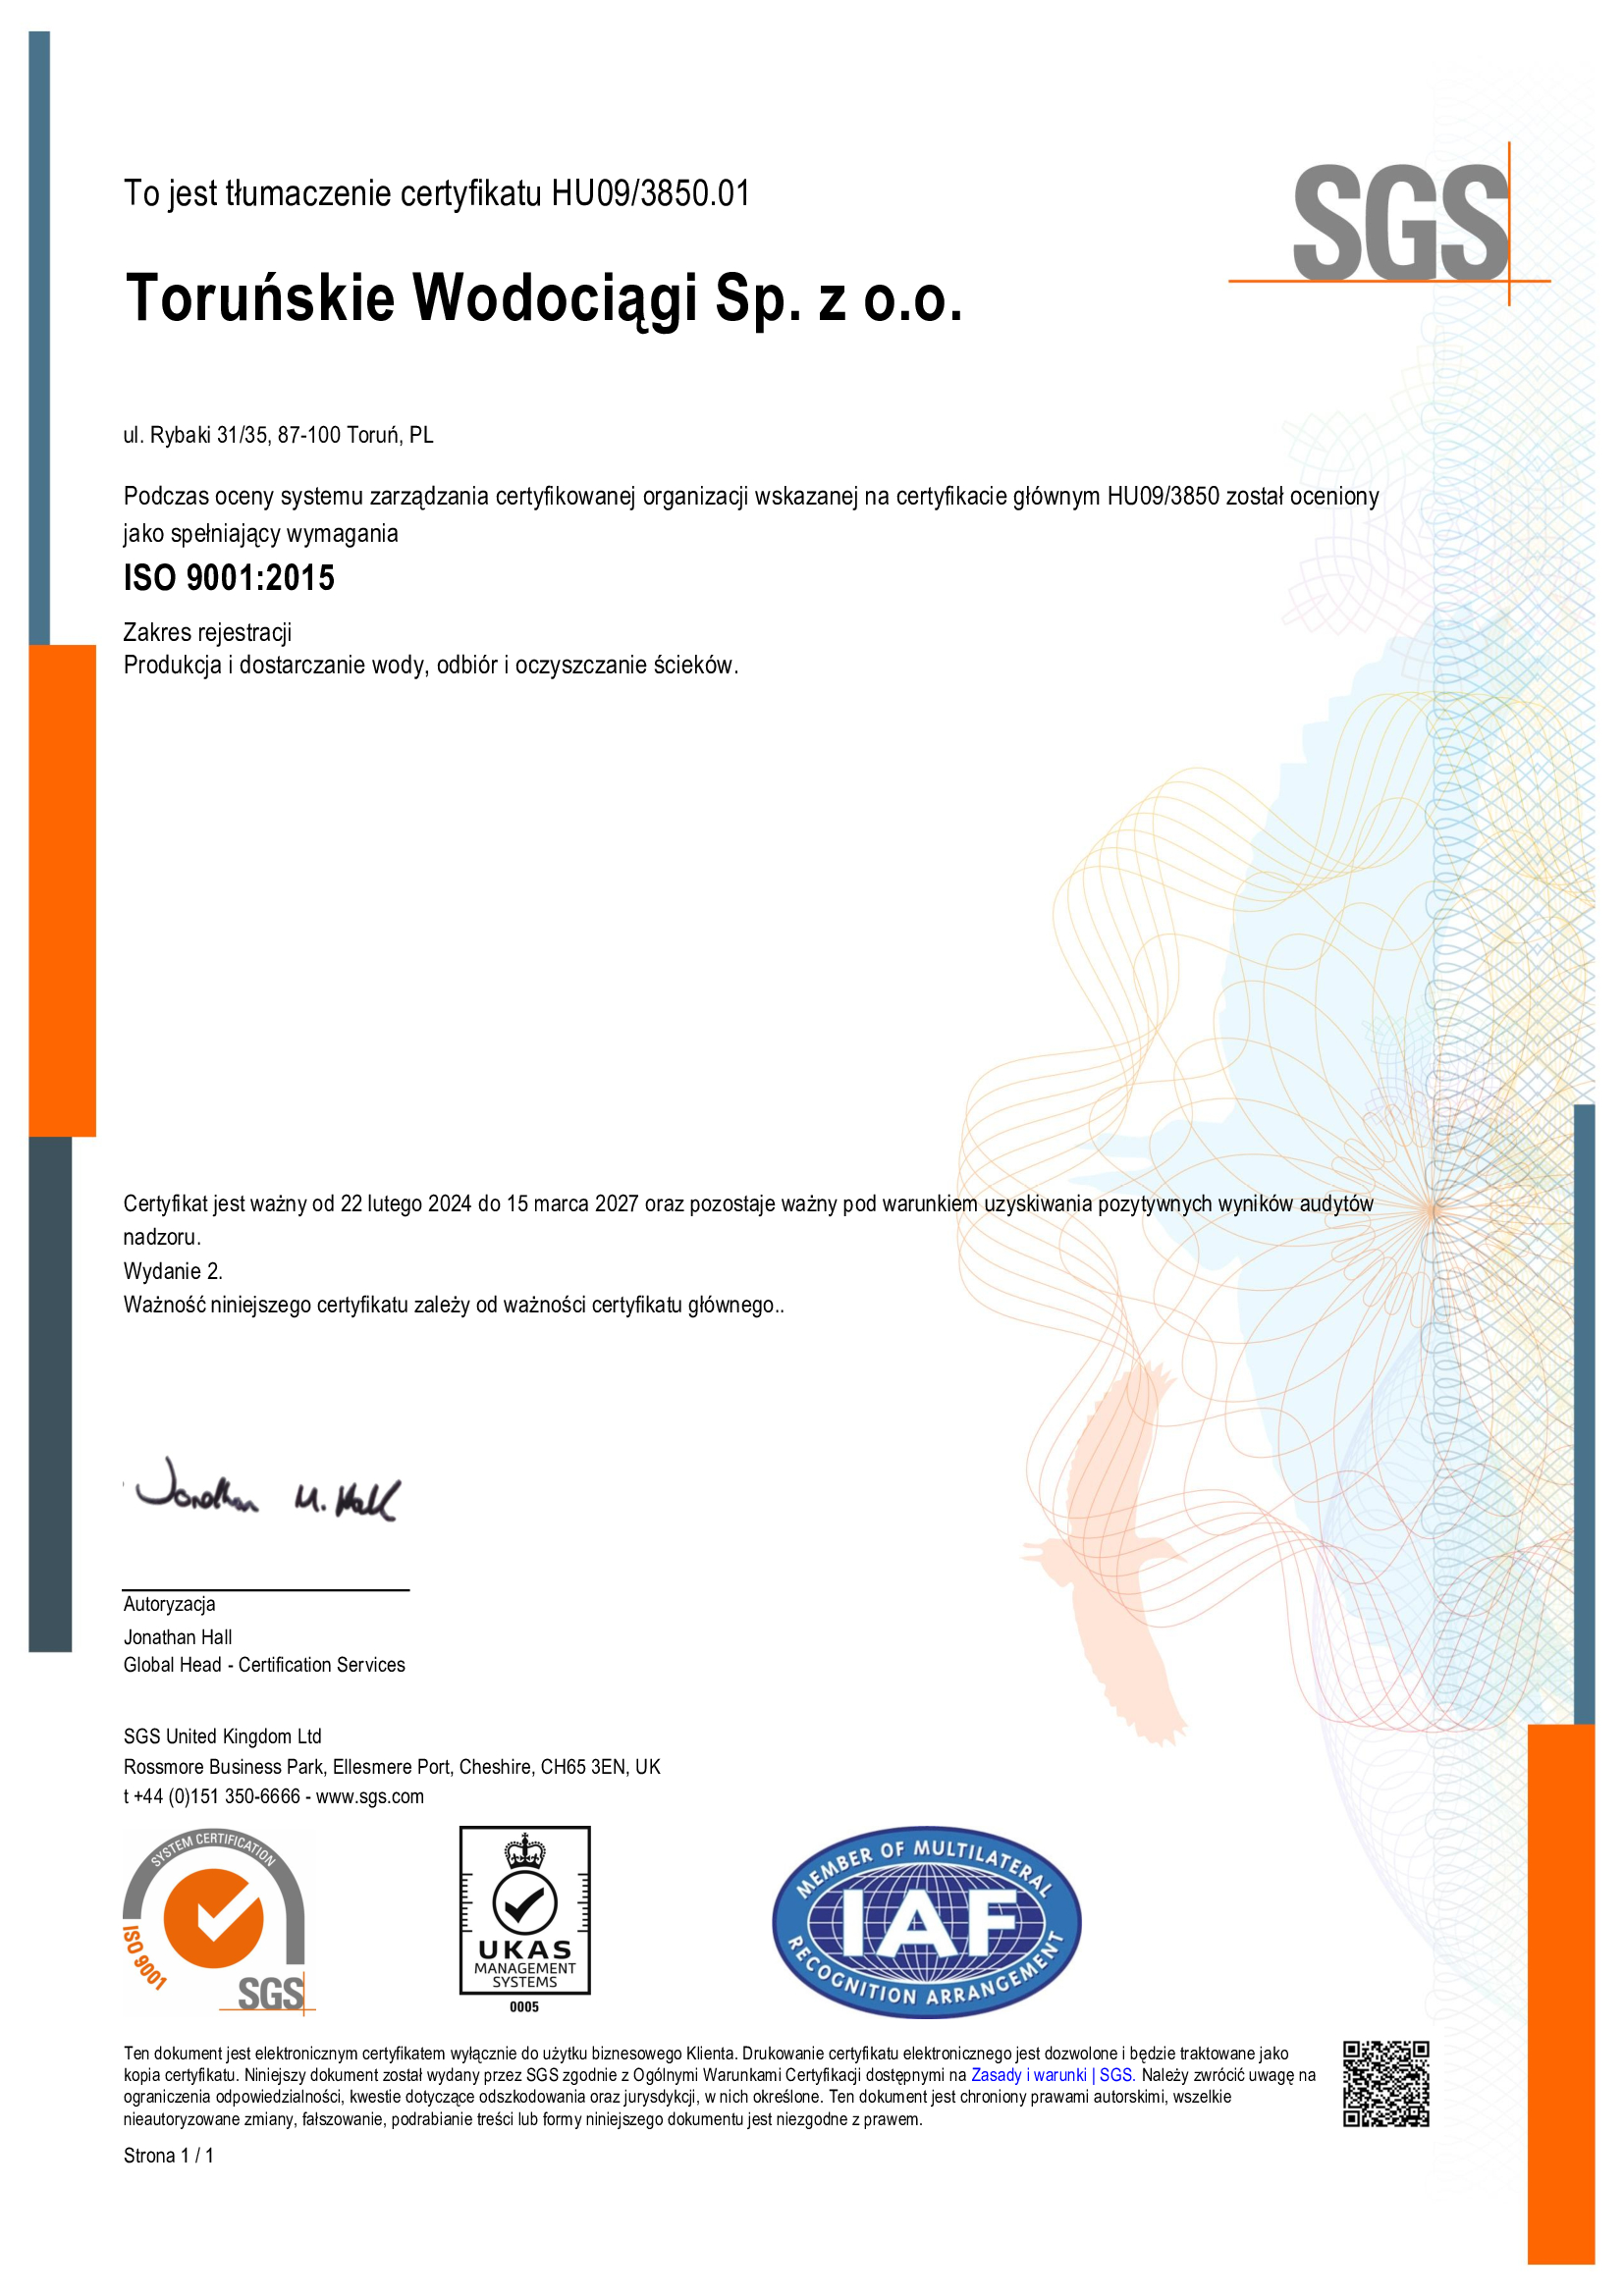 Certyfikat jakości i środowiska ISO 9001